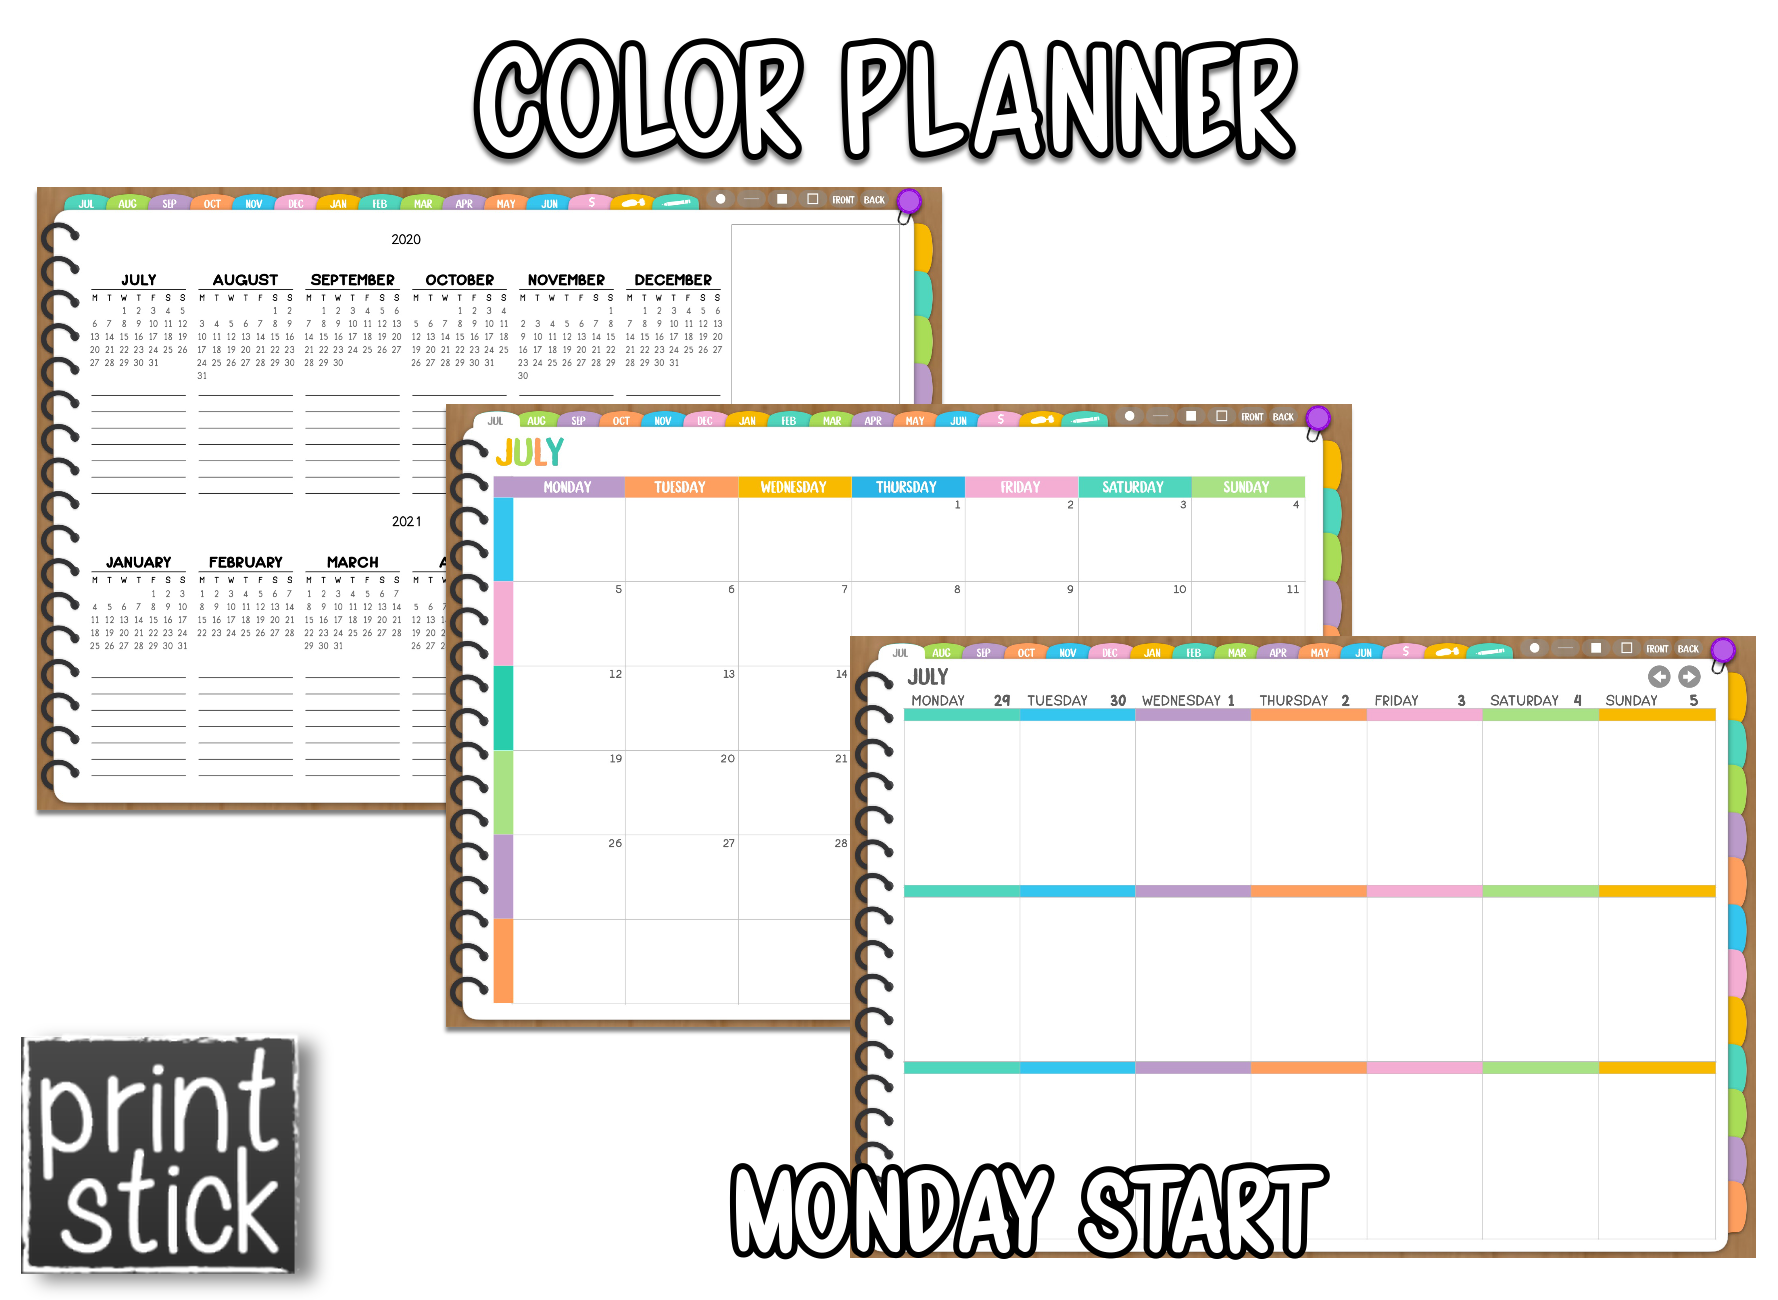 Color Planner - Digital Planner - Print Stick